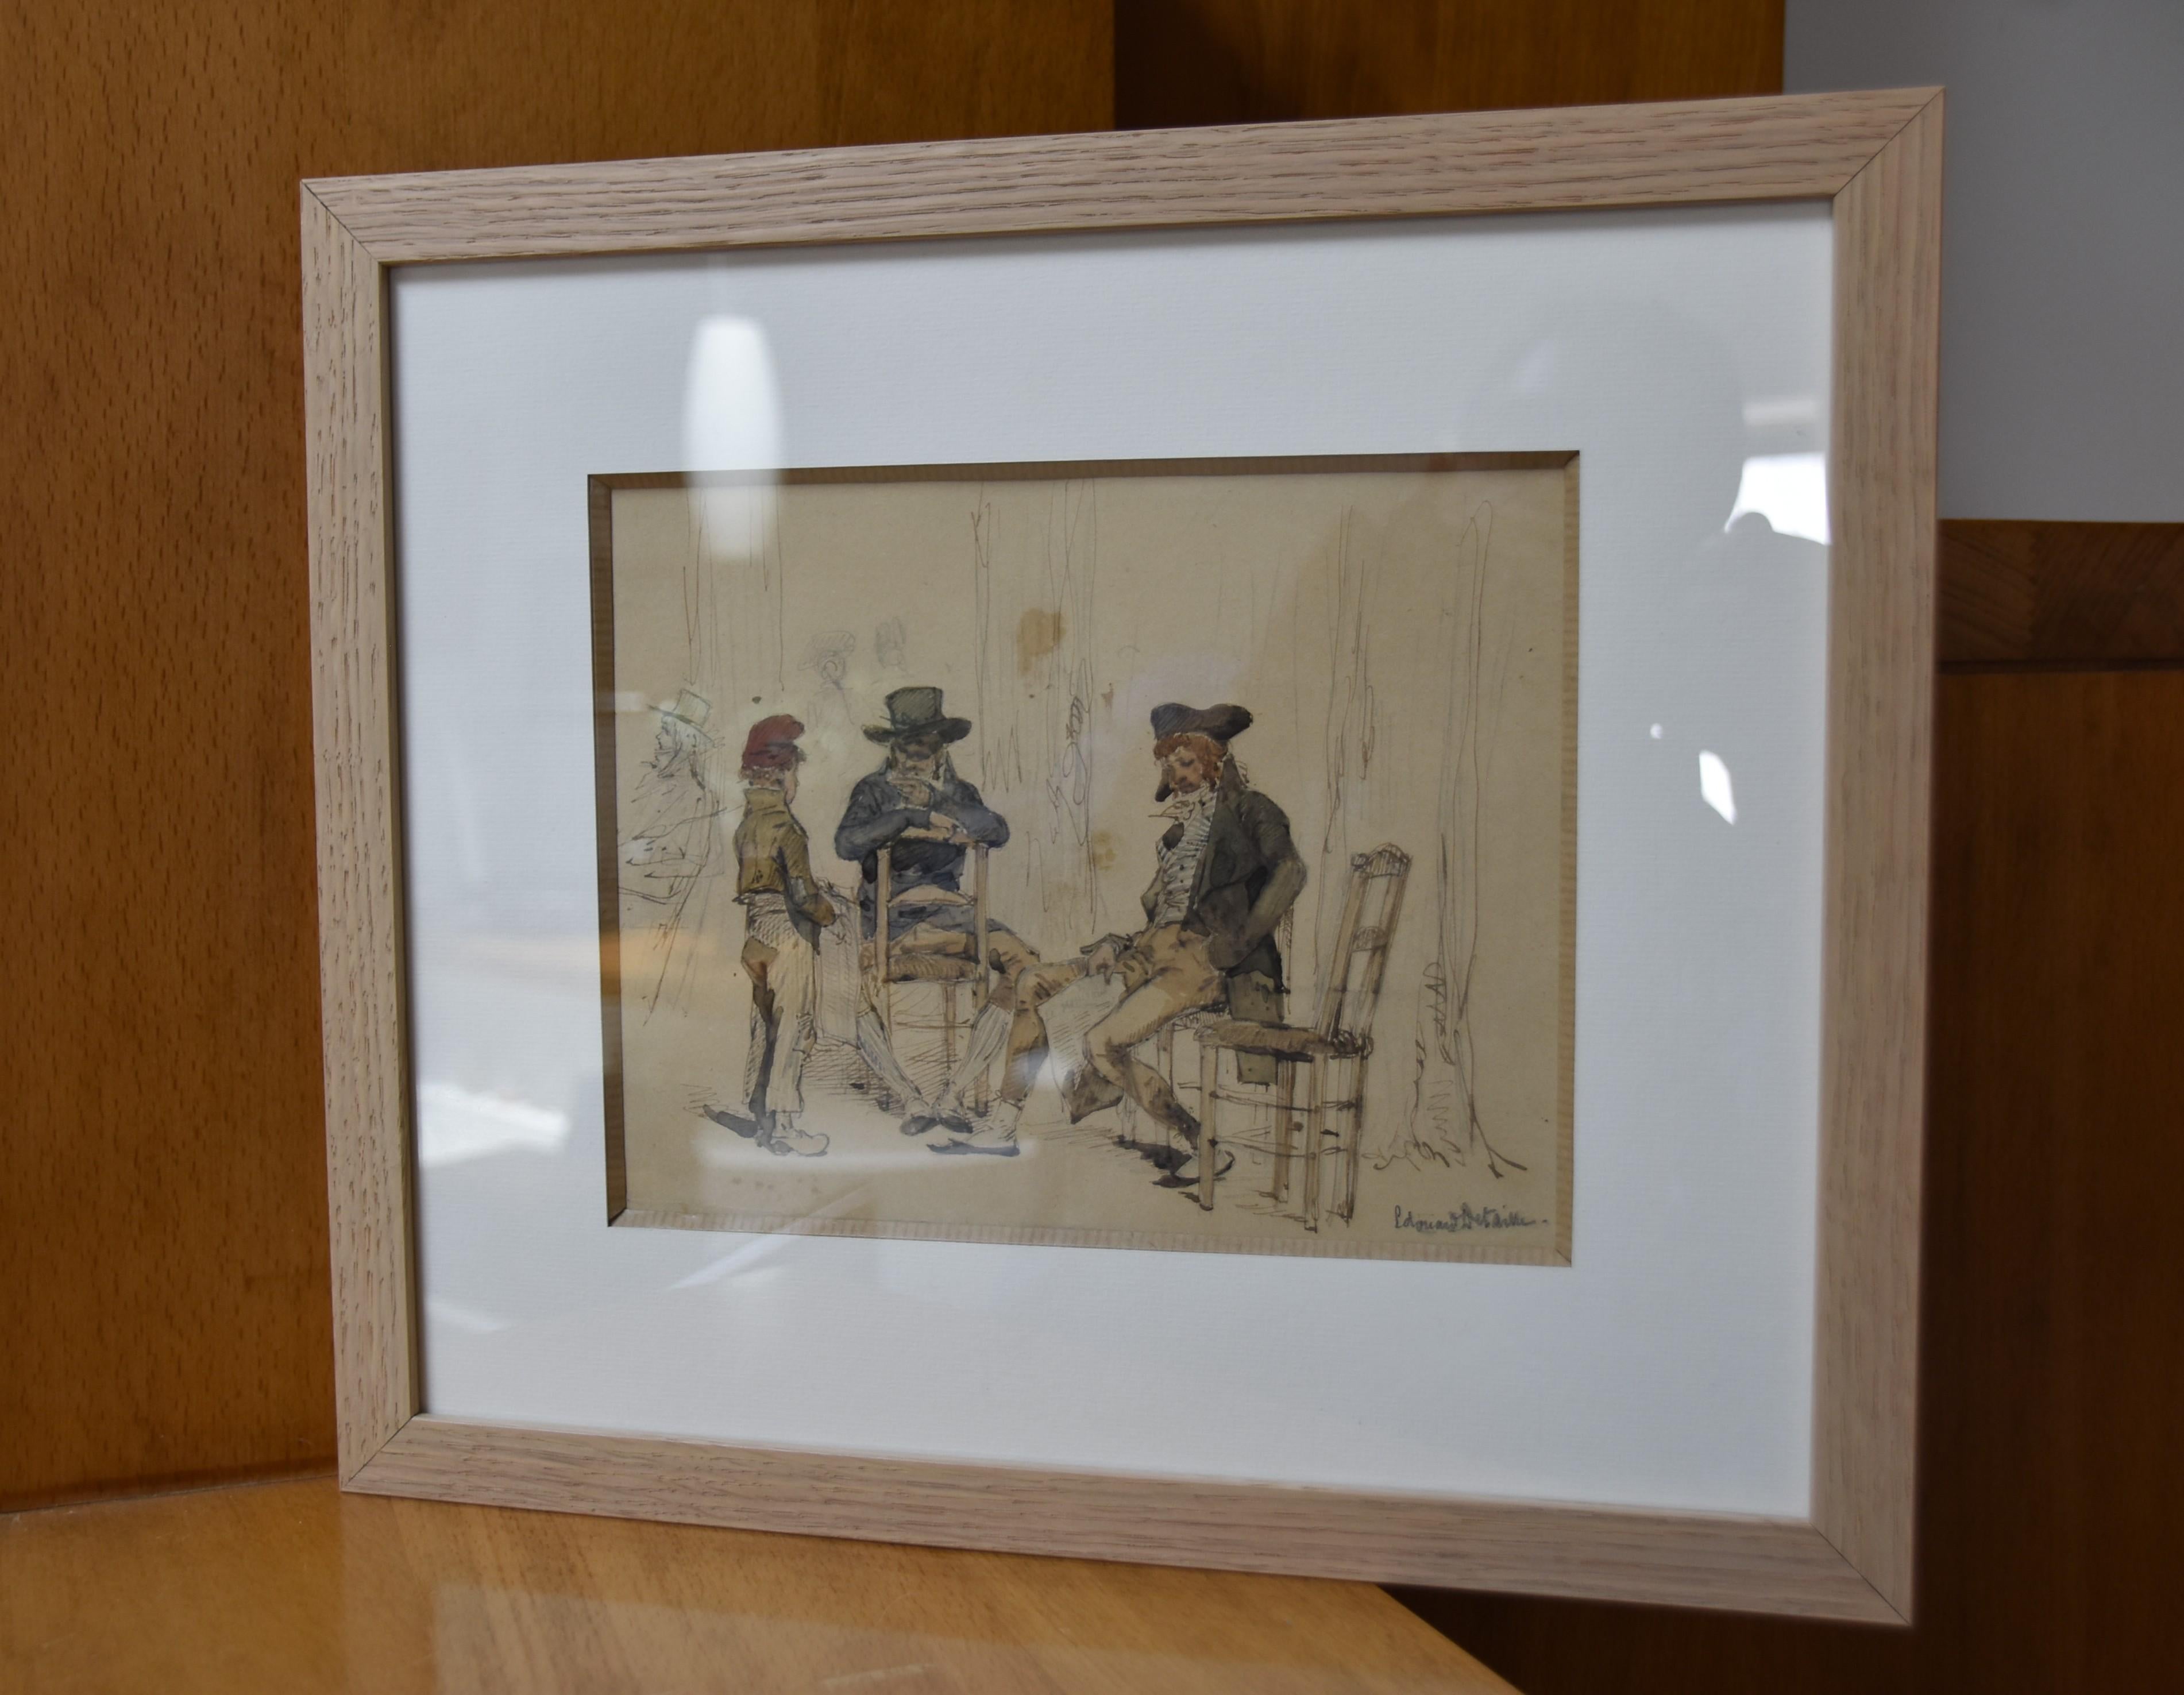 Edouard Detaille (1848-1912)
Le jeune livreur de journaux
16.5 x 20,5 cm 
Aquarelle et encre brune sur papier
Signé en bas à droite
En bon état, le papier est légèrement jauni par le temps, quelques taches d'origine.
Cadre moderne : 30.5  x 35 cm